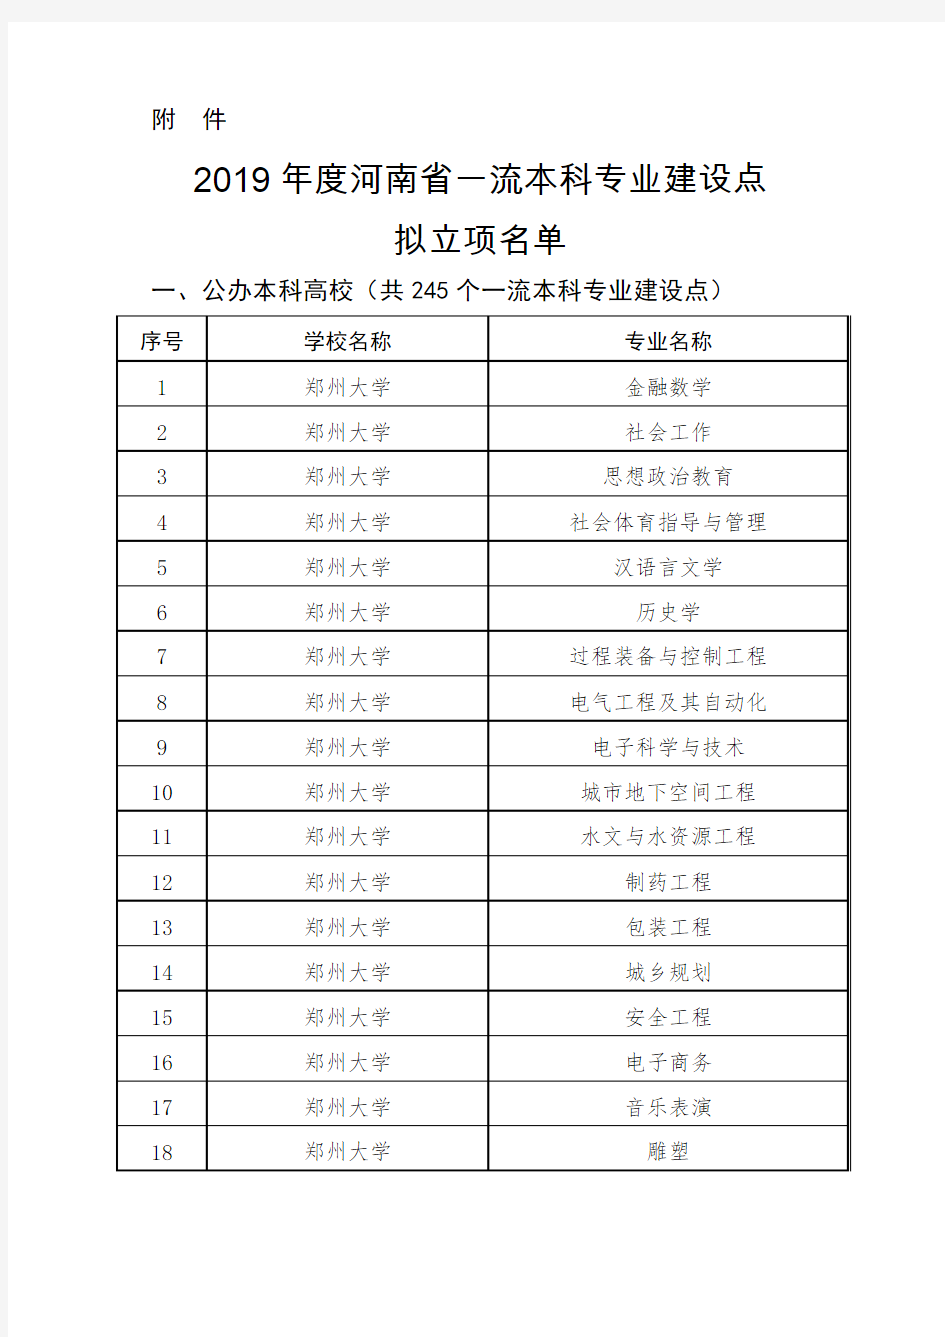 2019年度河南省一流本科专业建设点 拟立项名单